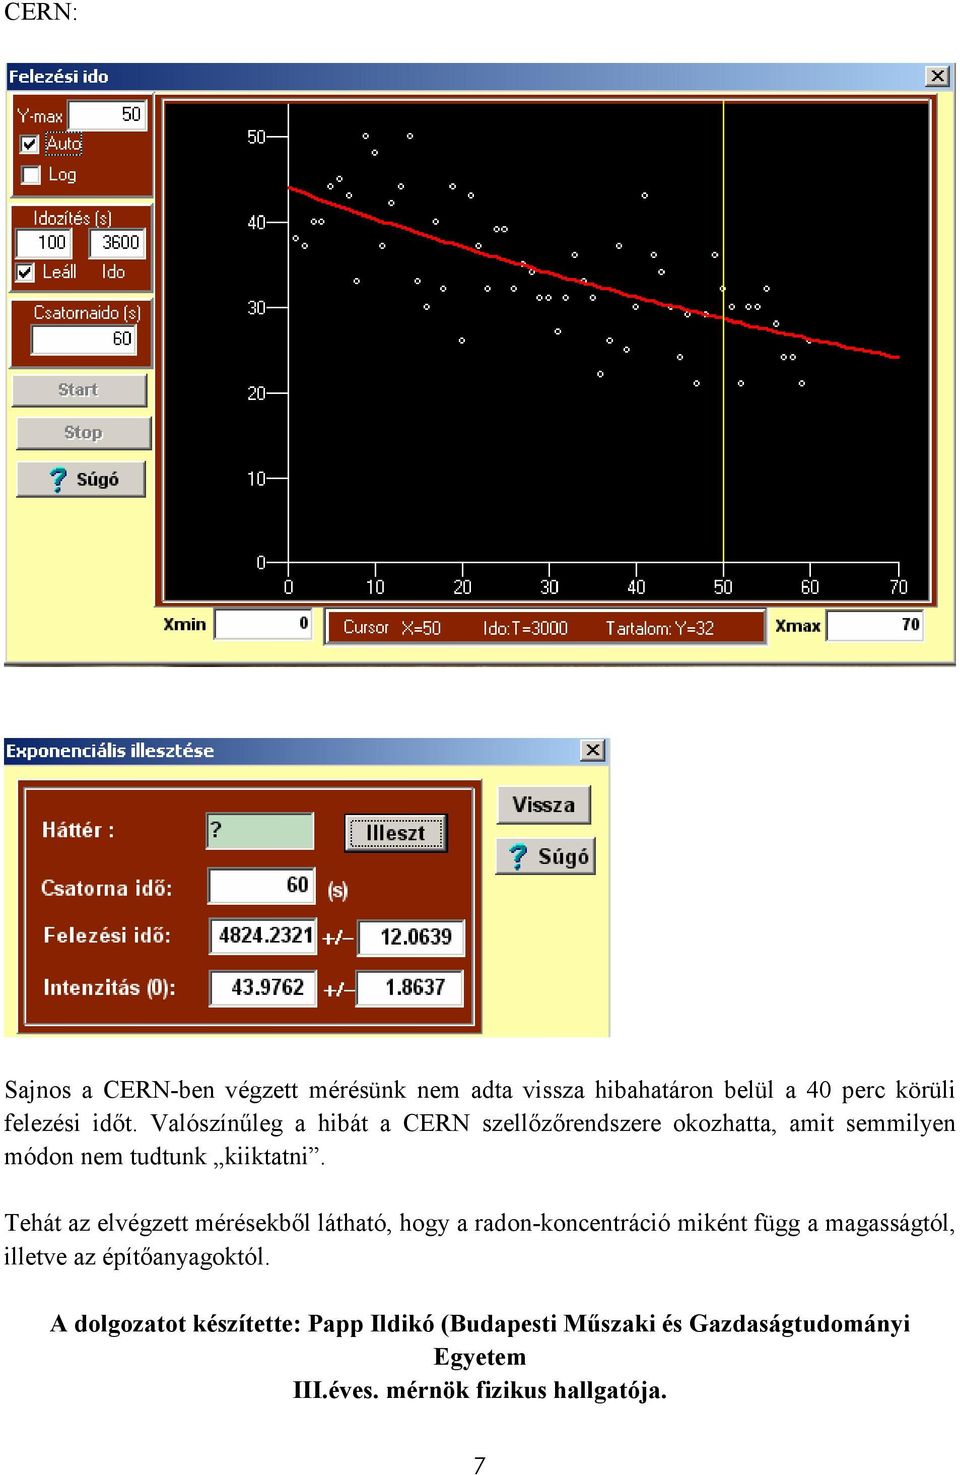 Tehát az elvégzett mérésekbıl látható, hogy a radon-koncentráció miként függ a magasságtól, illetve az